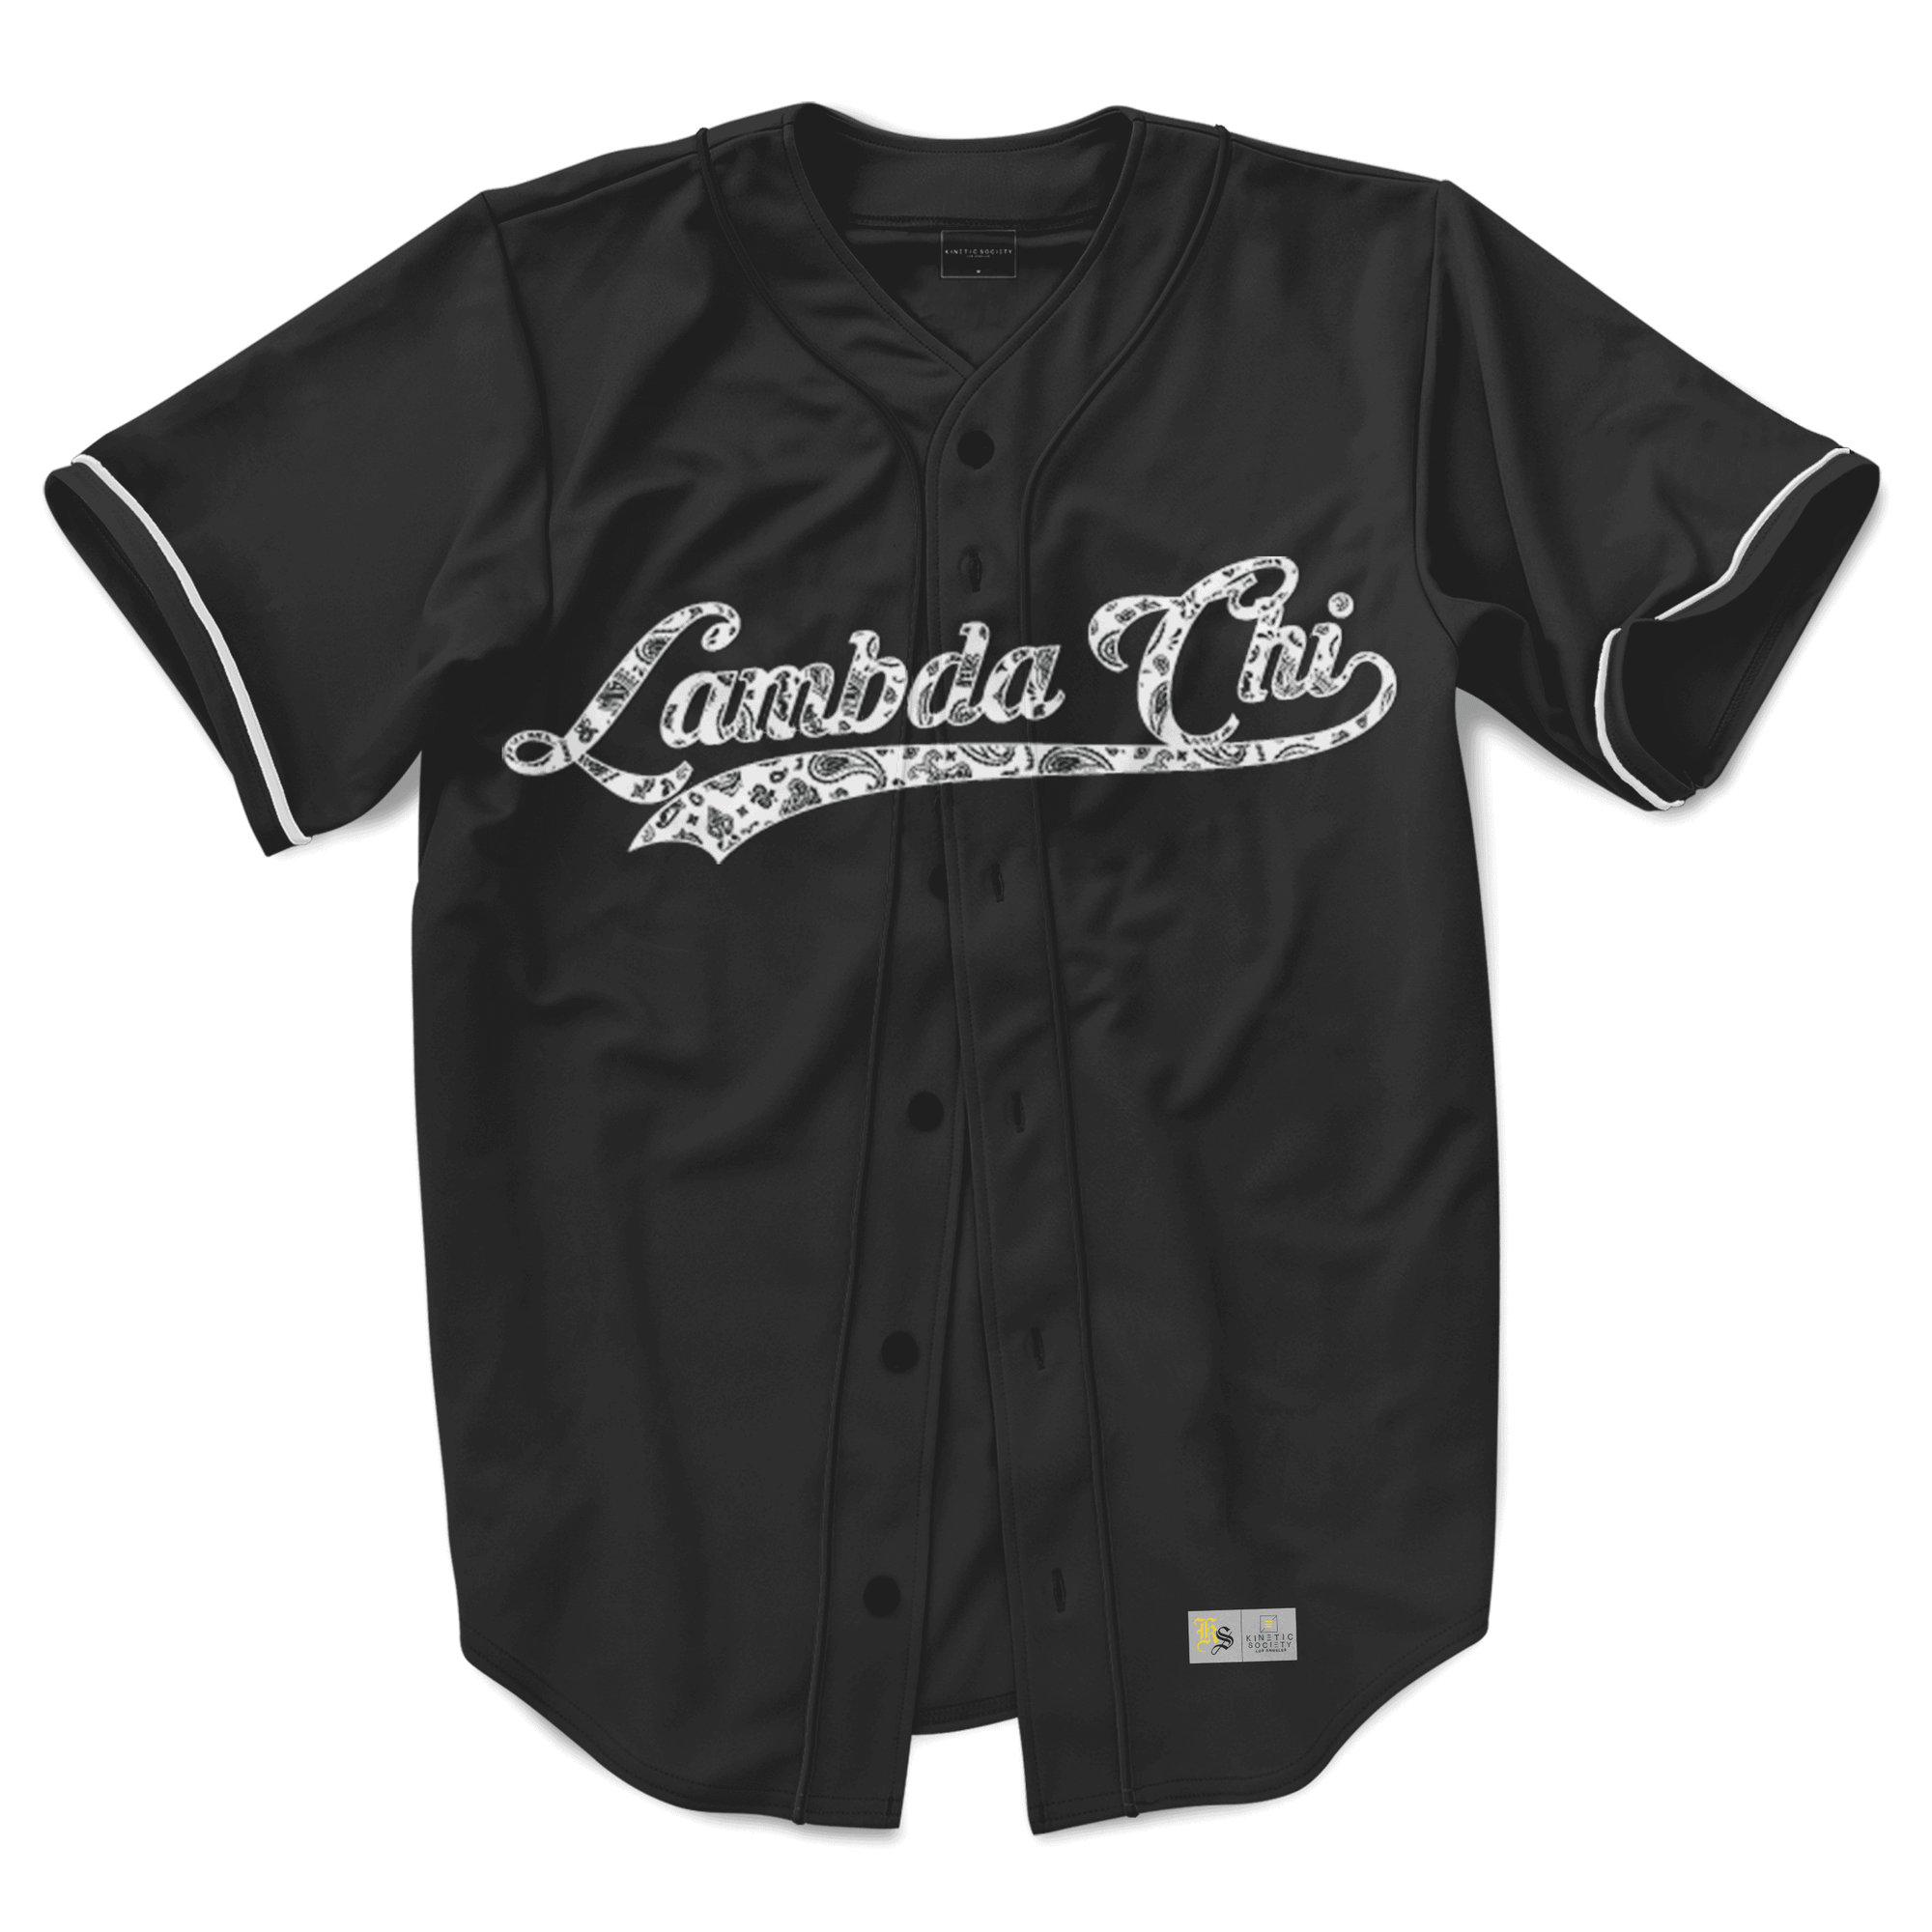 Lambda Chi Alpha - Paisley Baseball Jersey